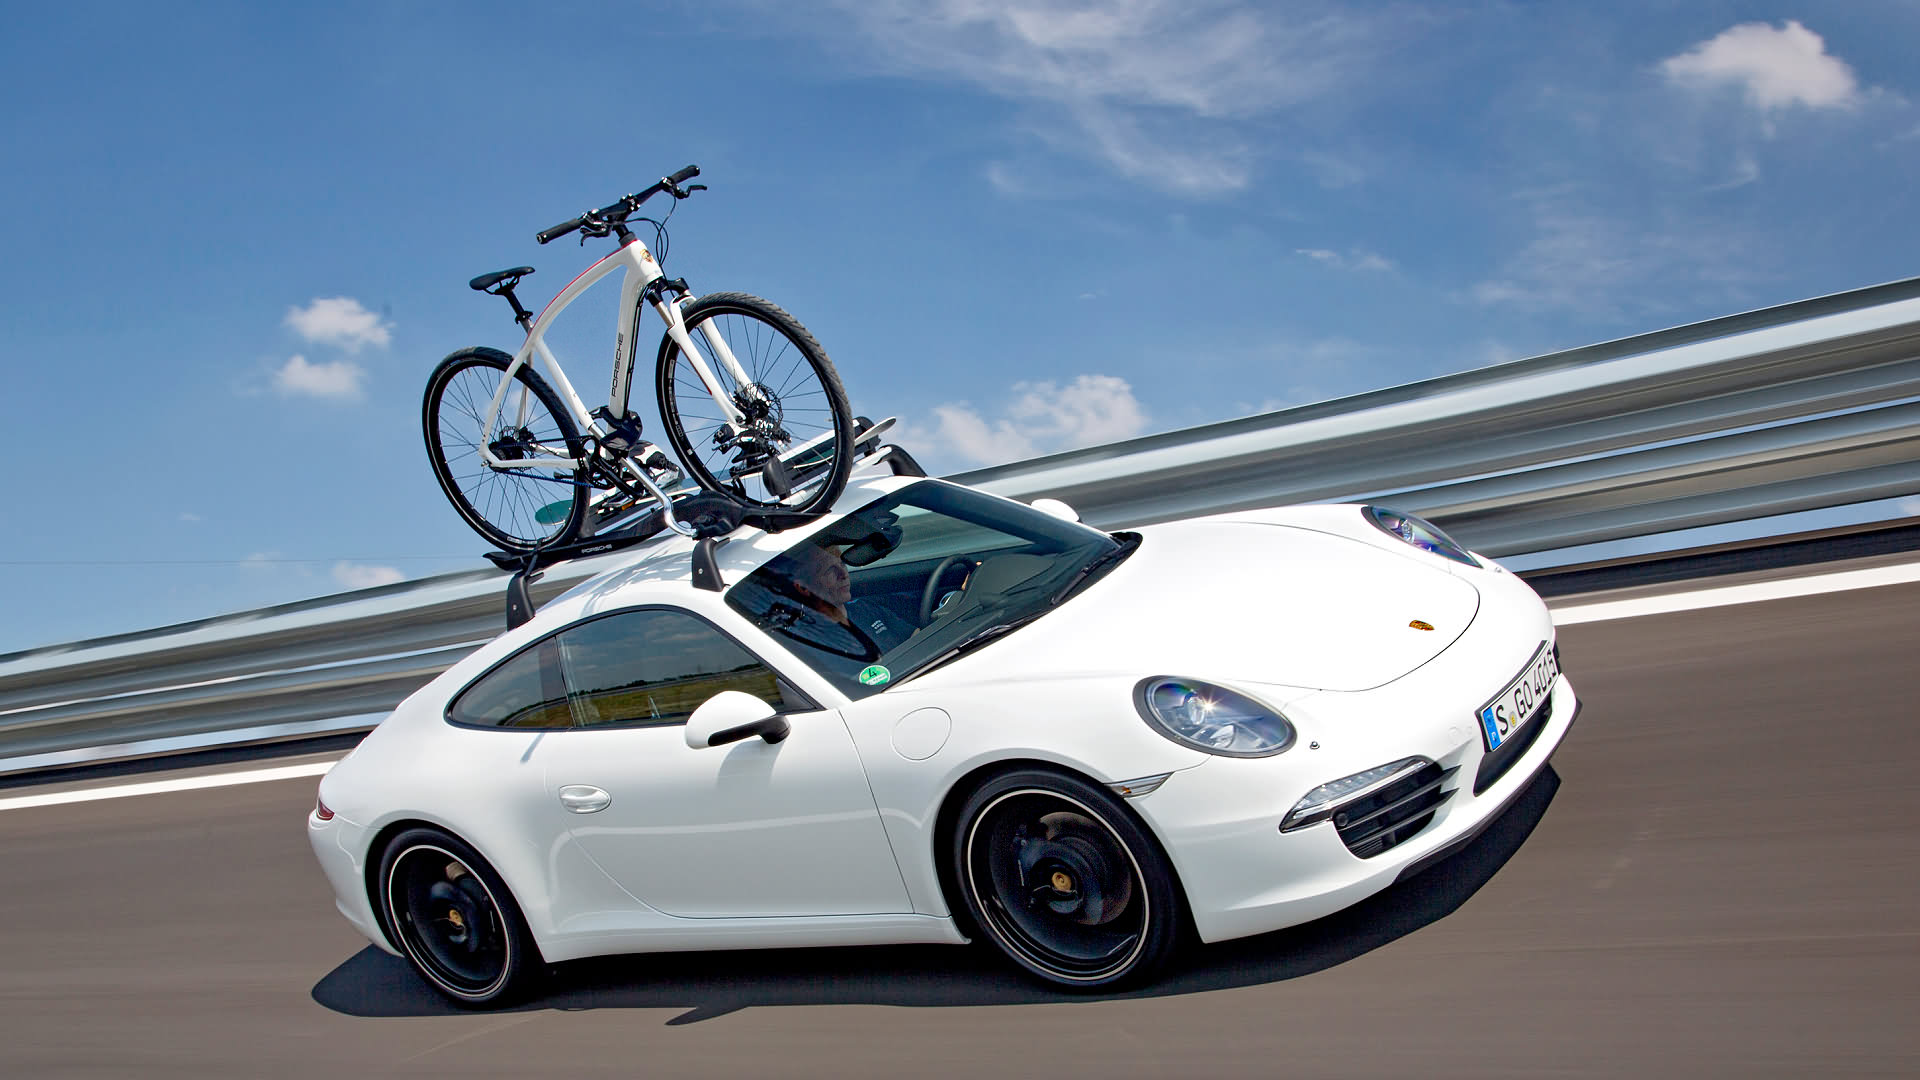 Rumbo a las vacaciones en un Porsche 911